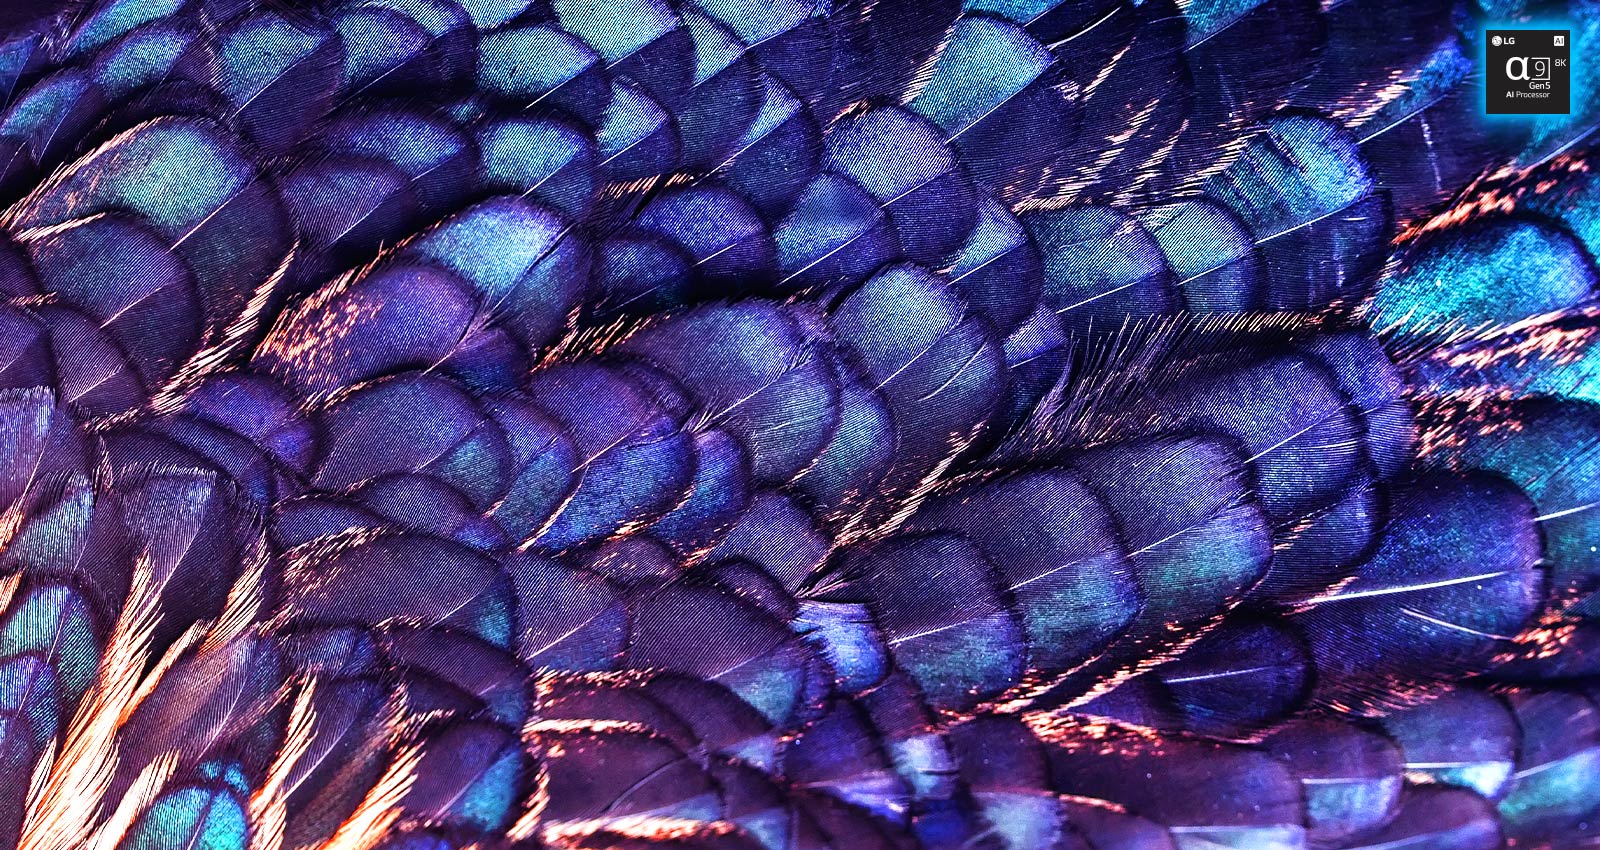 A képen egy tündérkék madár ragyogó, élénk színű, lila tollai láthatók. A kép két részre van osztva – a felső részben élénkebb kép látható, az AI 8K felskálázást bemutató szöveggel és a processzorlapka képével, míg a kép alsó része halványabban jelenik meg.